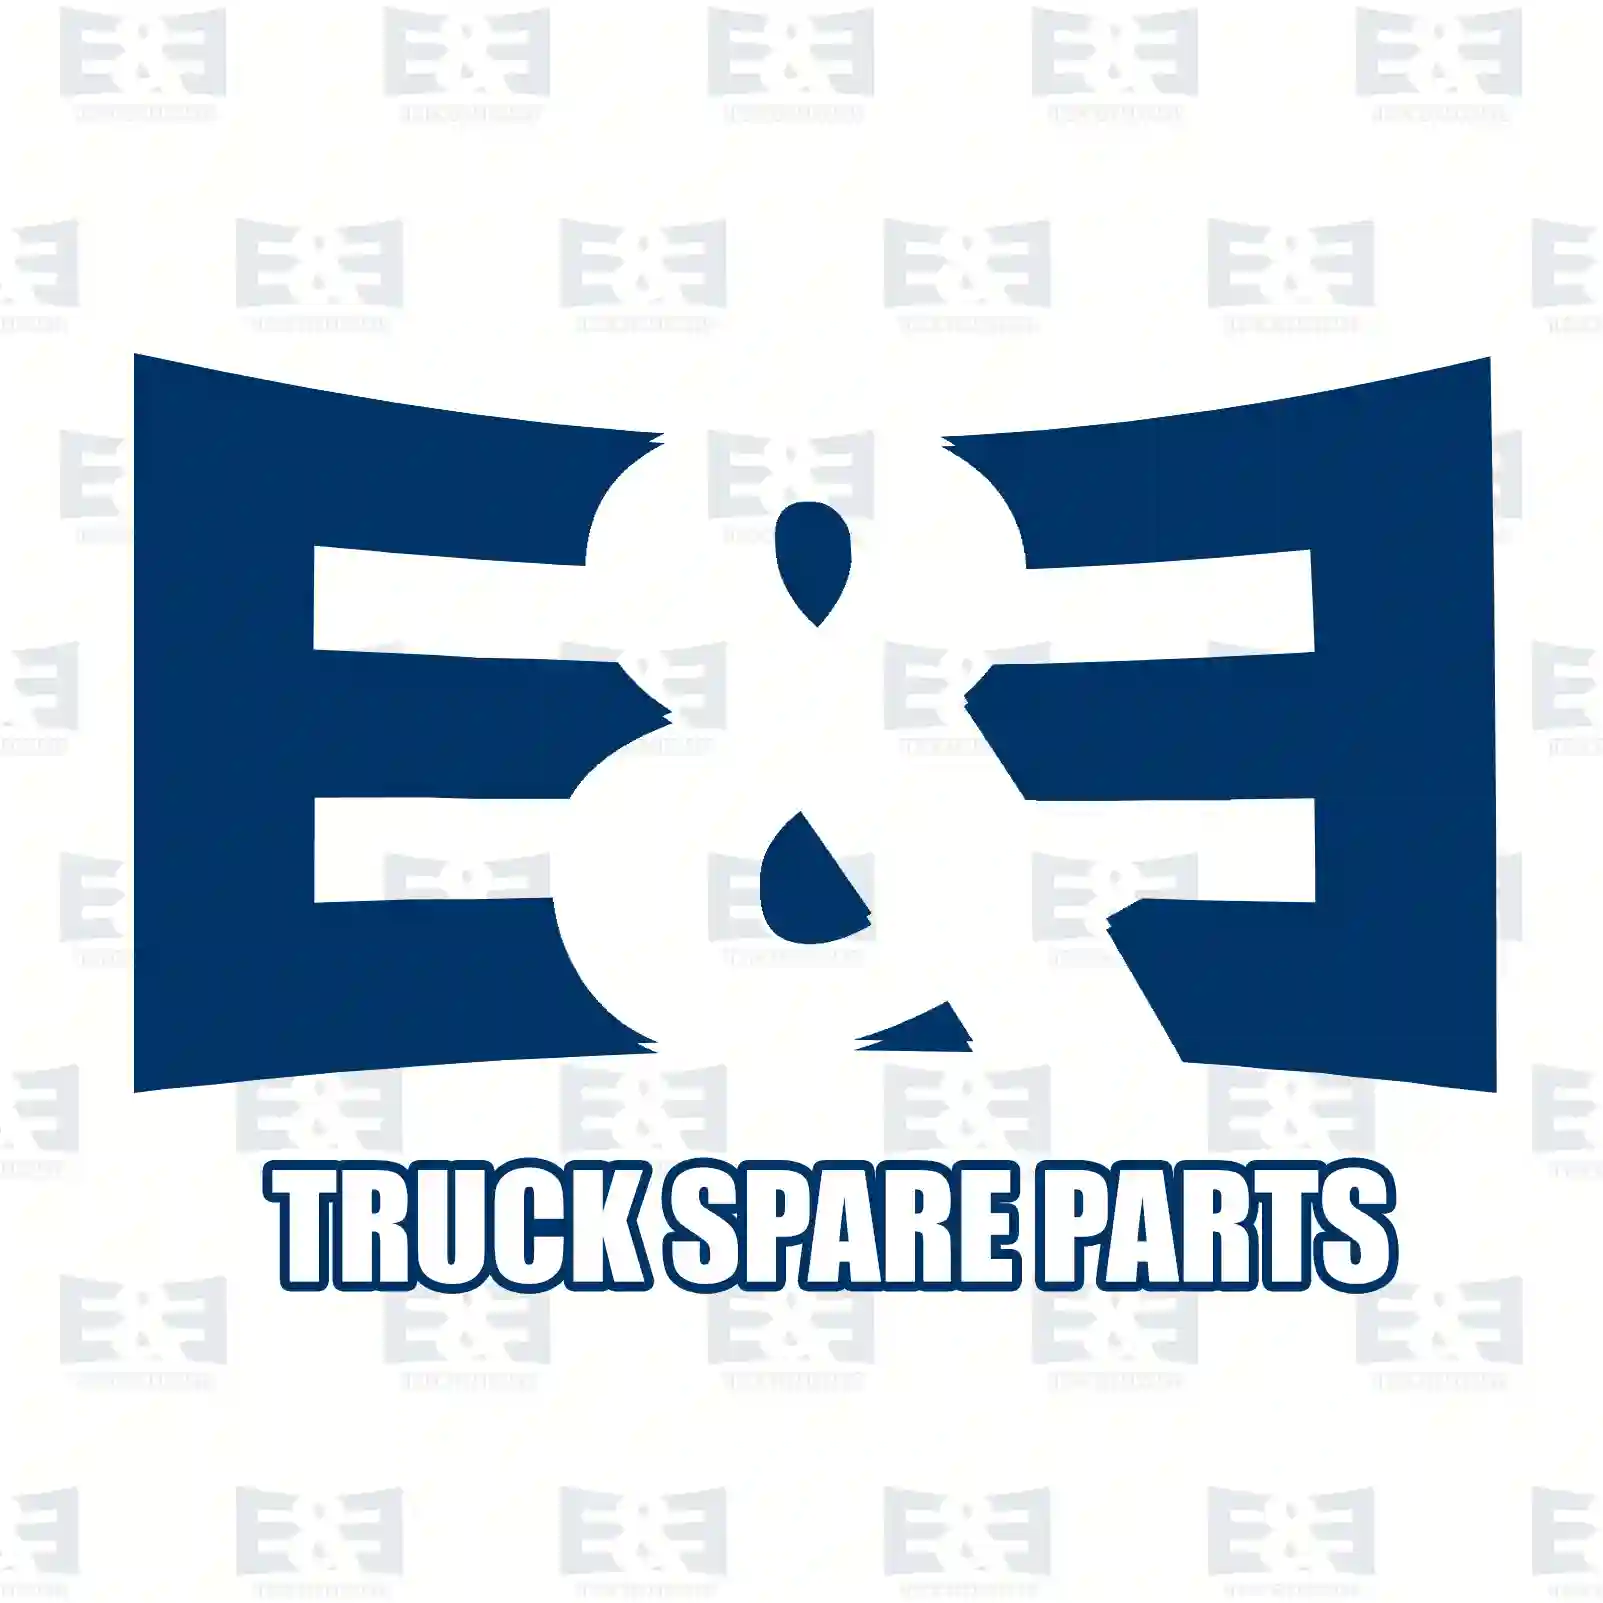 Drum brake lining kit, axle kit, 2E2296638, MBLK2370, 1535250, 1535250S, 385950, 551125, 551139, 551163 ||  2E2296638 E&E Truck Spare Parts | Truck Spare Parts, Auotomotive Spare Parts Drum brake lining kit, axle kit, 2E2296638, MBLK2370, 1535250, 1535250S, 385950, 551125, 551139, 551163 ||  2E2296638 E&E Truck Spare Parts | Truck Spare Parts, Auotomotive Spare Parts